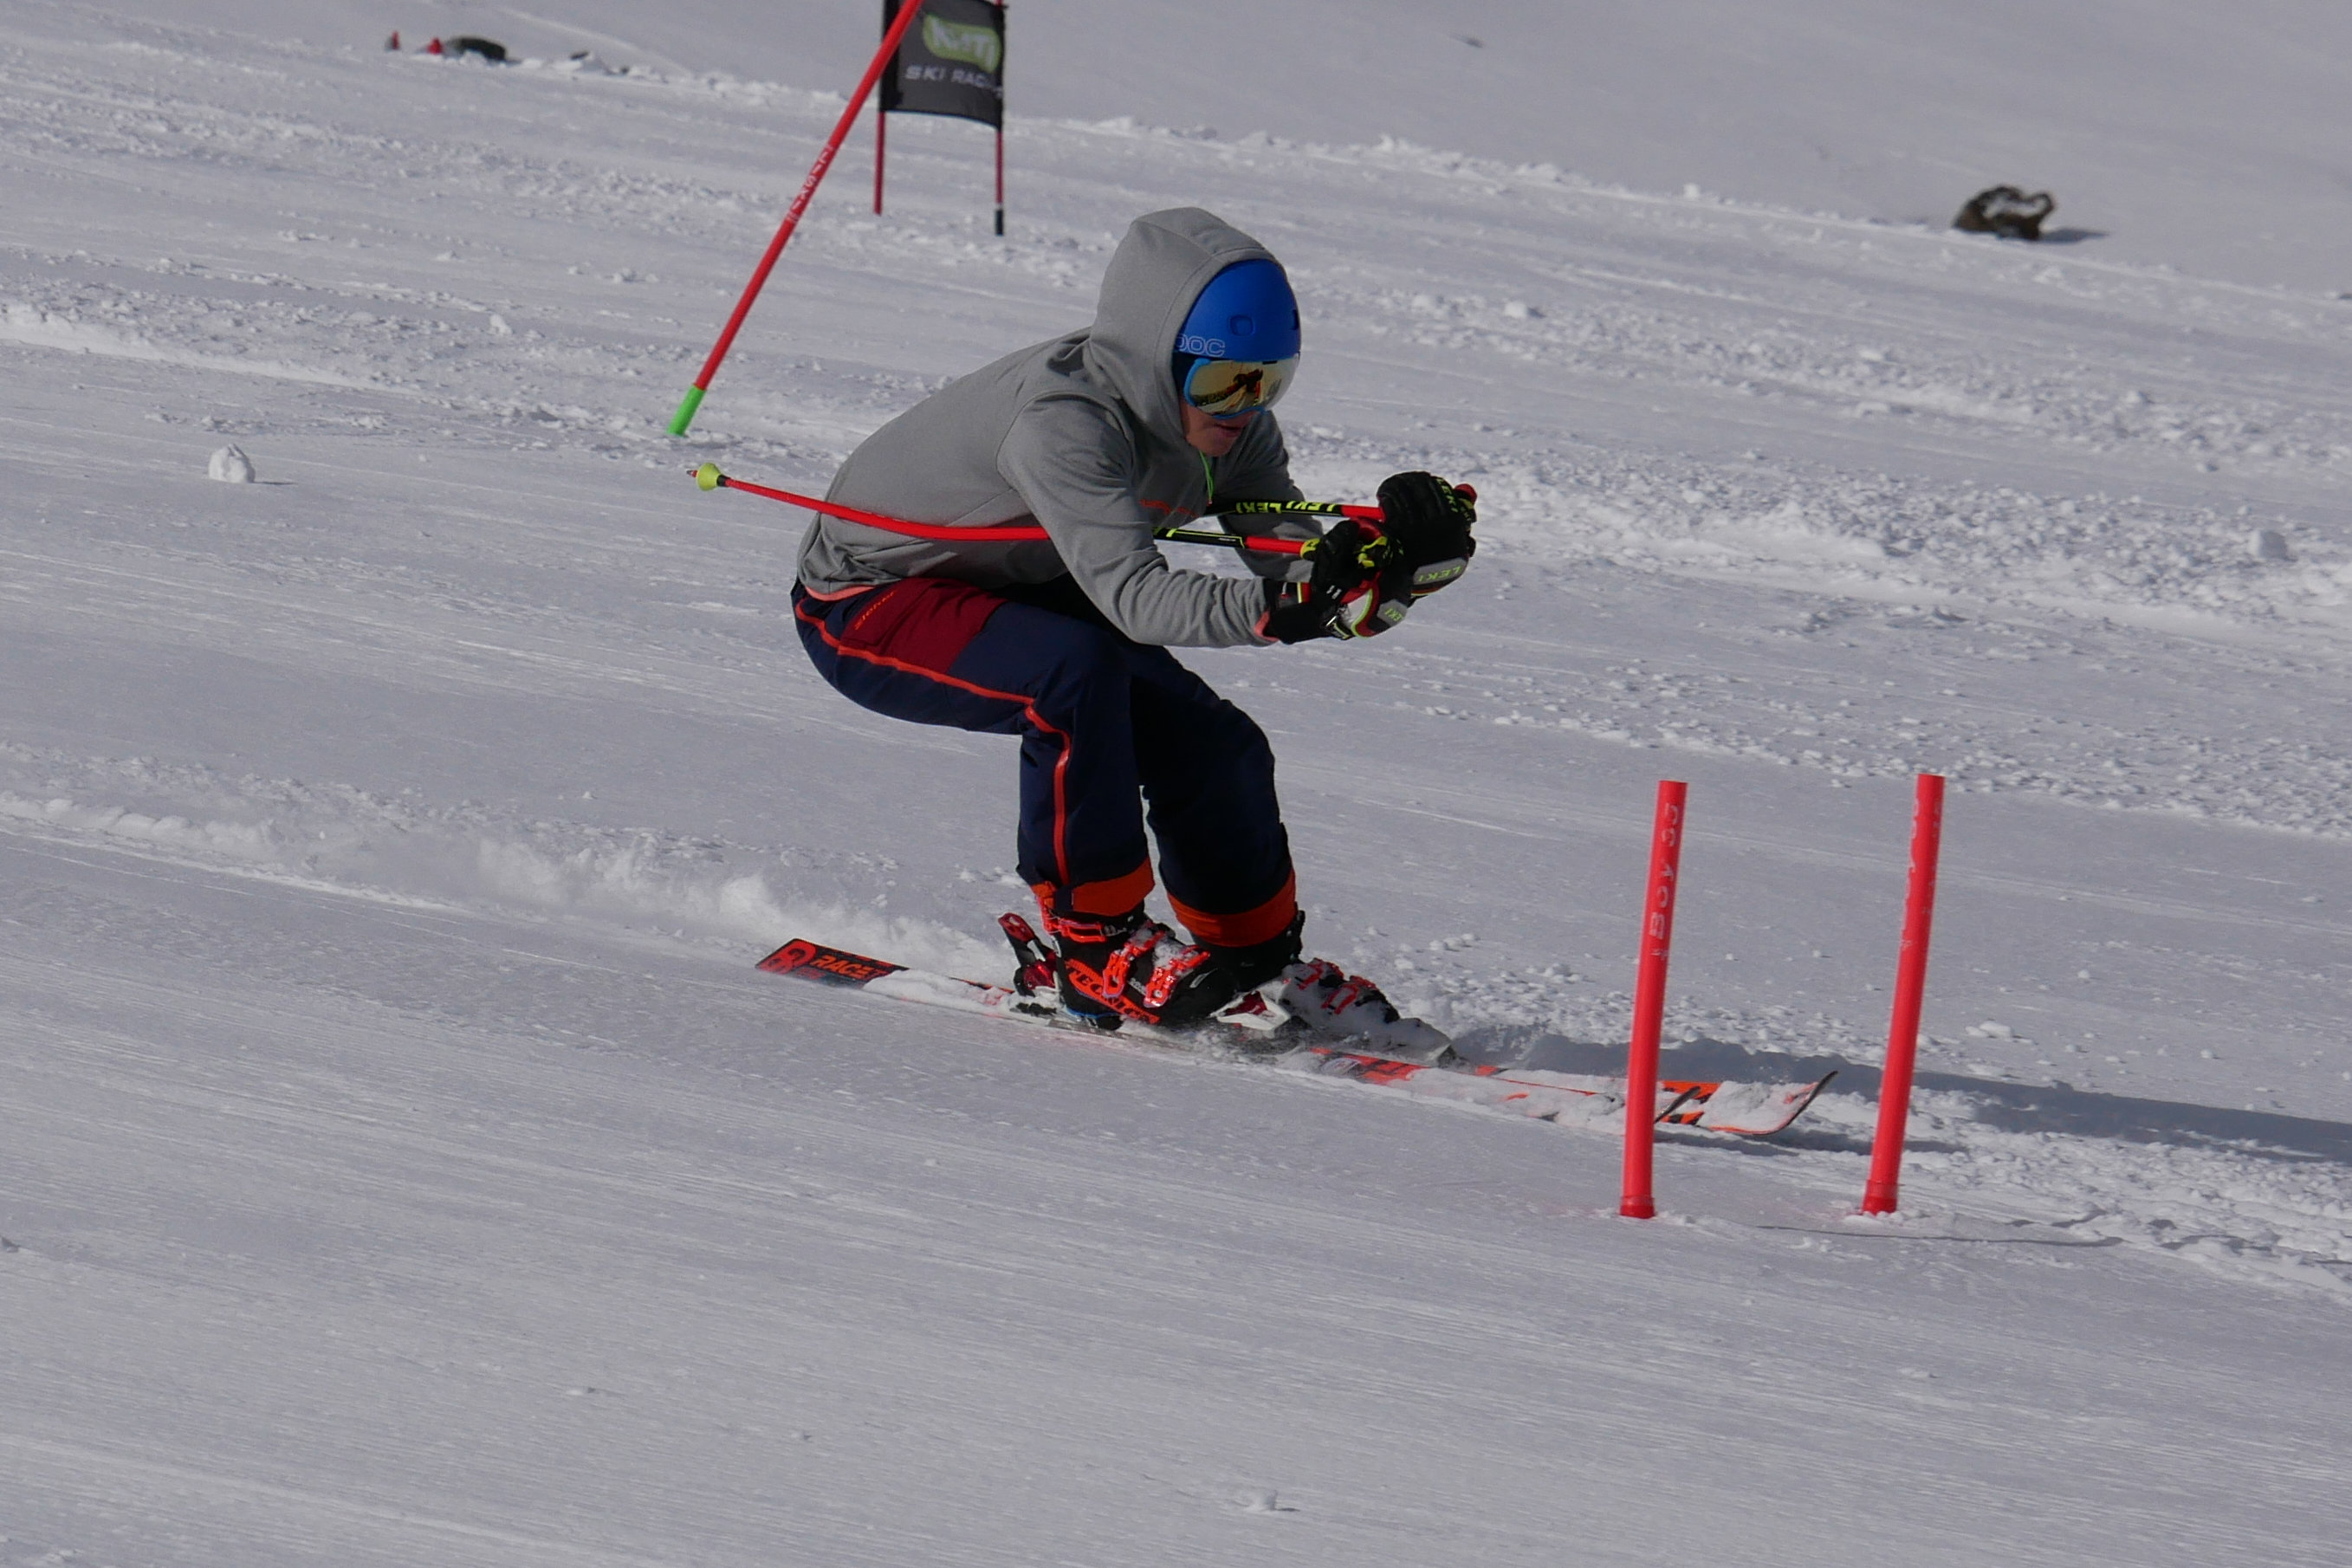 Skifahrer in Schusshocke